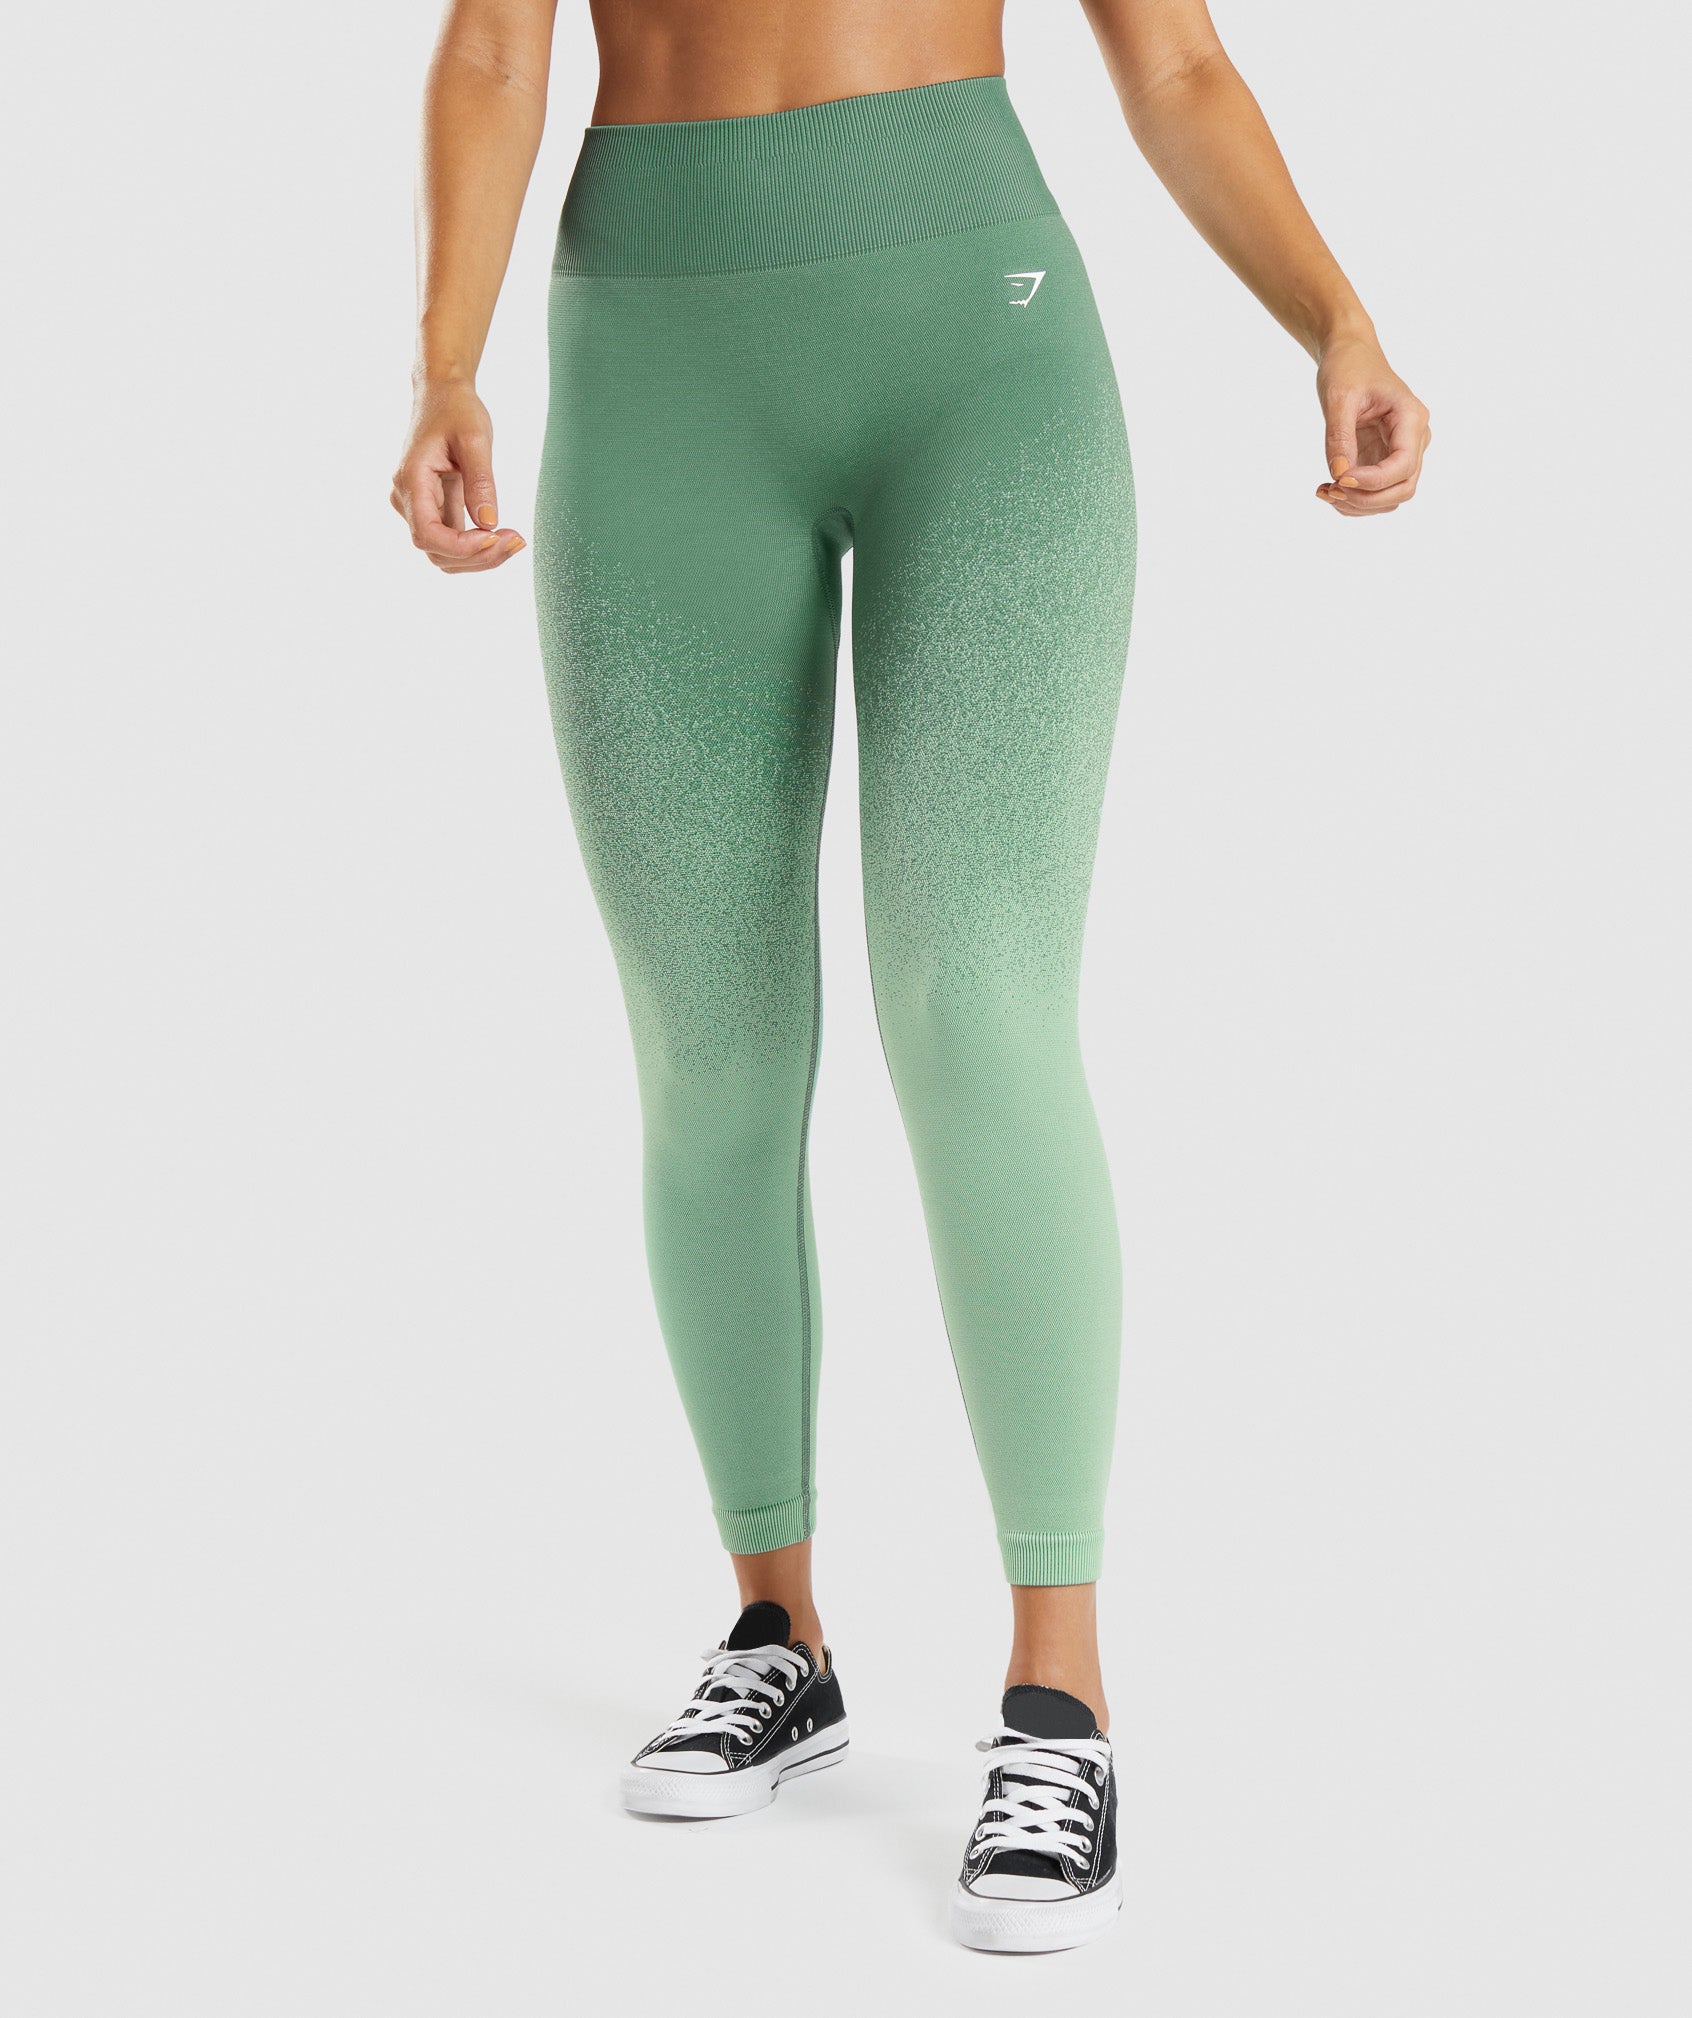 Gymshark Illumination Seamless Leggings Black Lime Green Size S Women's